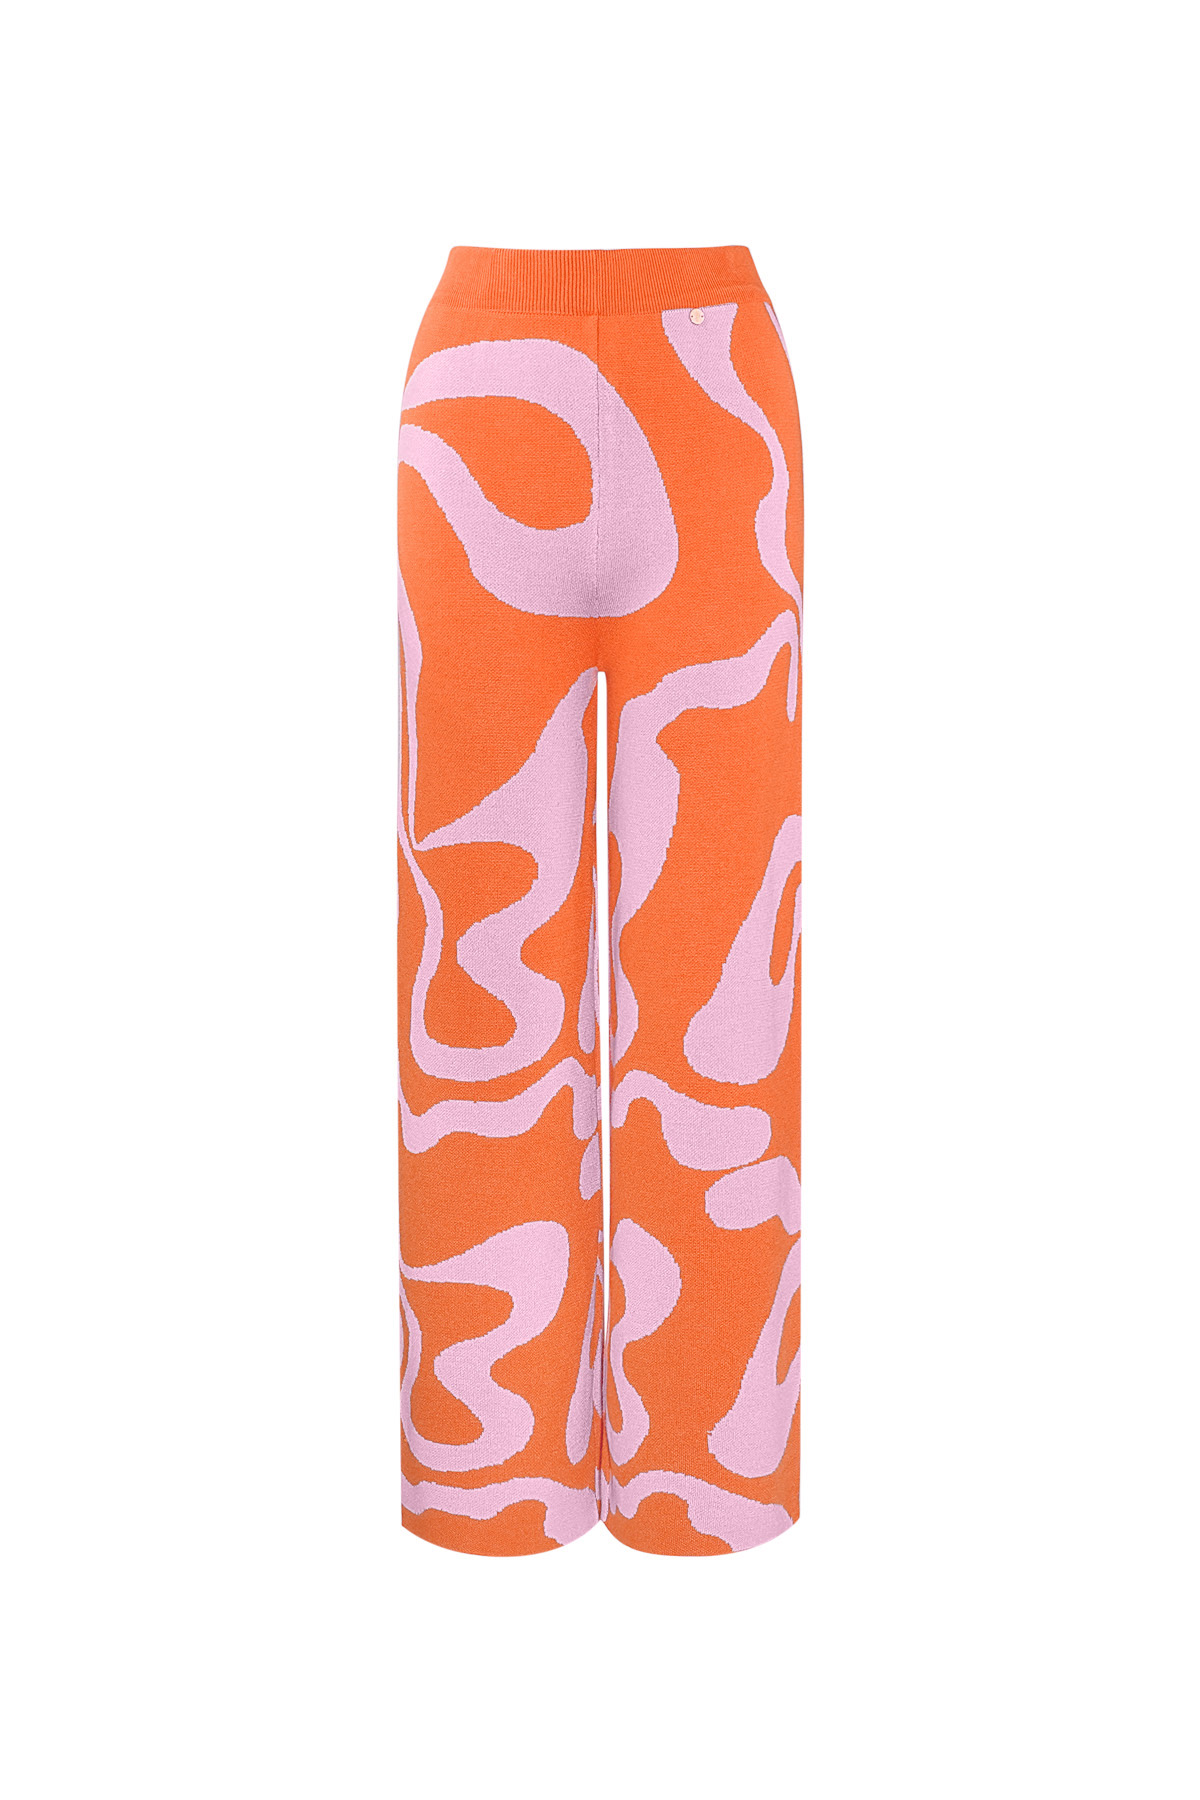 Hose mit Bio-Streifendruck - Orange und Rosa h5 